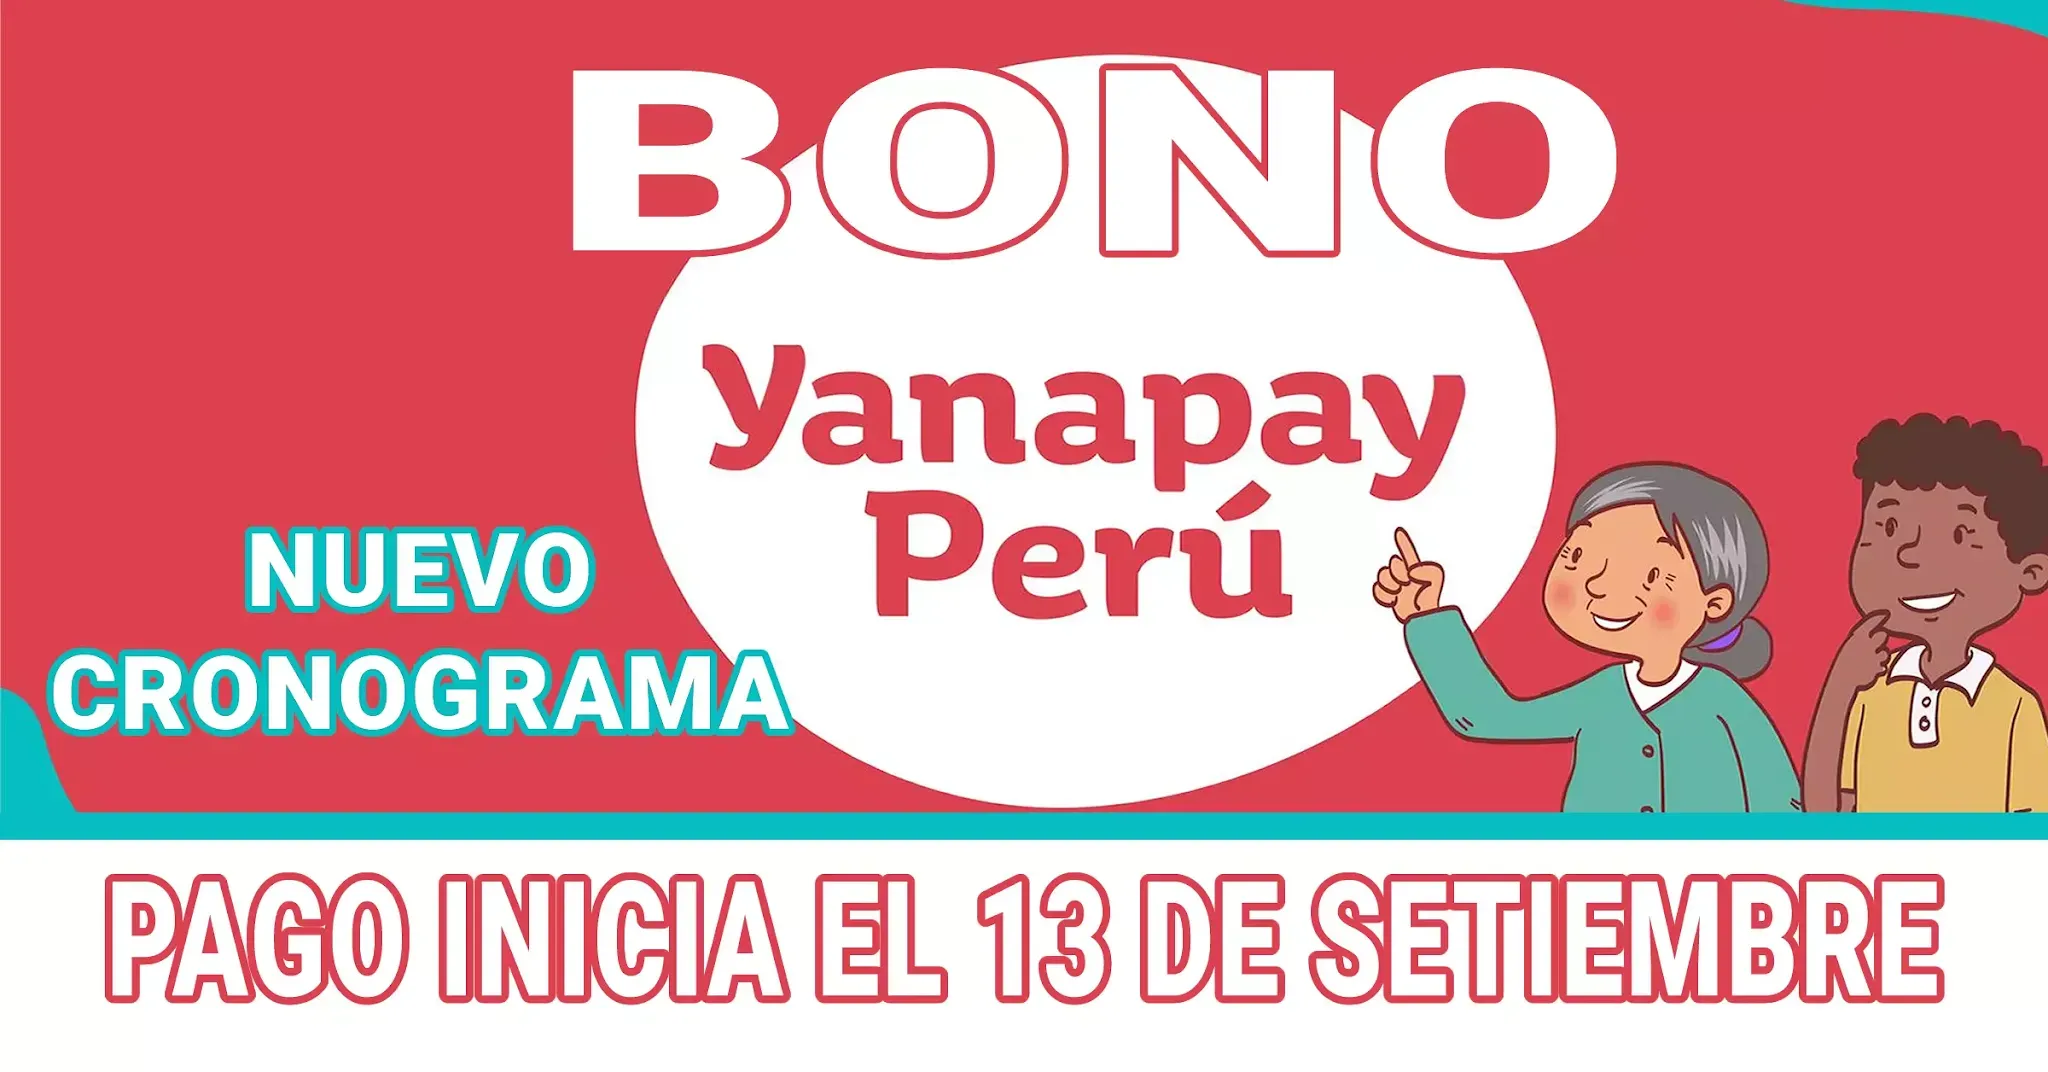 MIDIS - Pago del BONO YANAPAY Perú inicia el 13 de Setiembre - Nuevo Cronograma